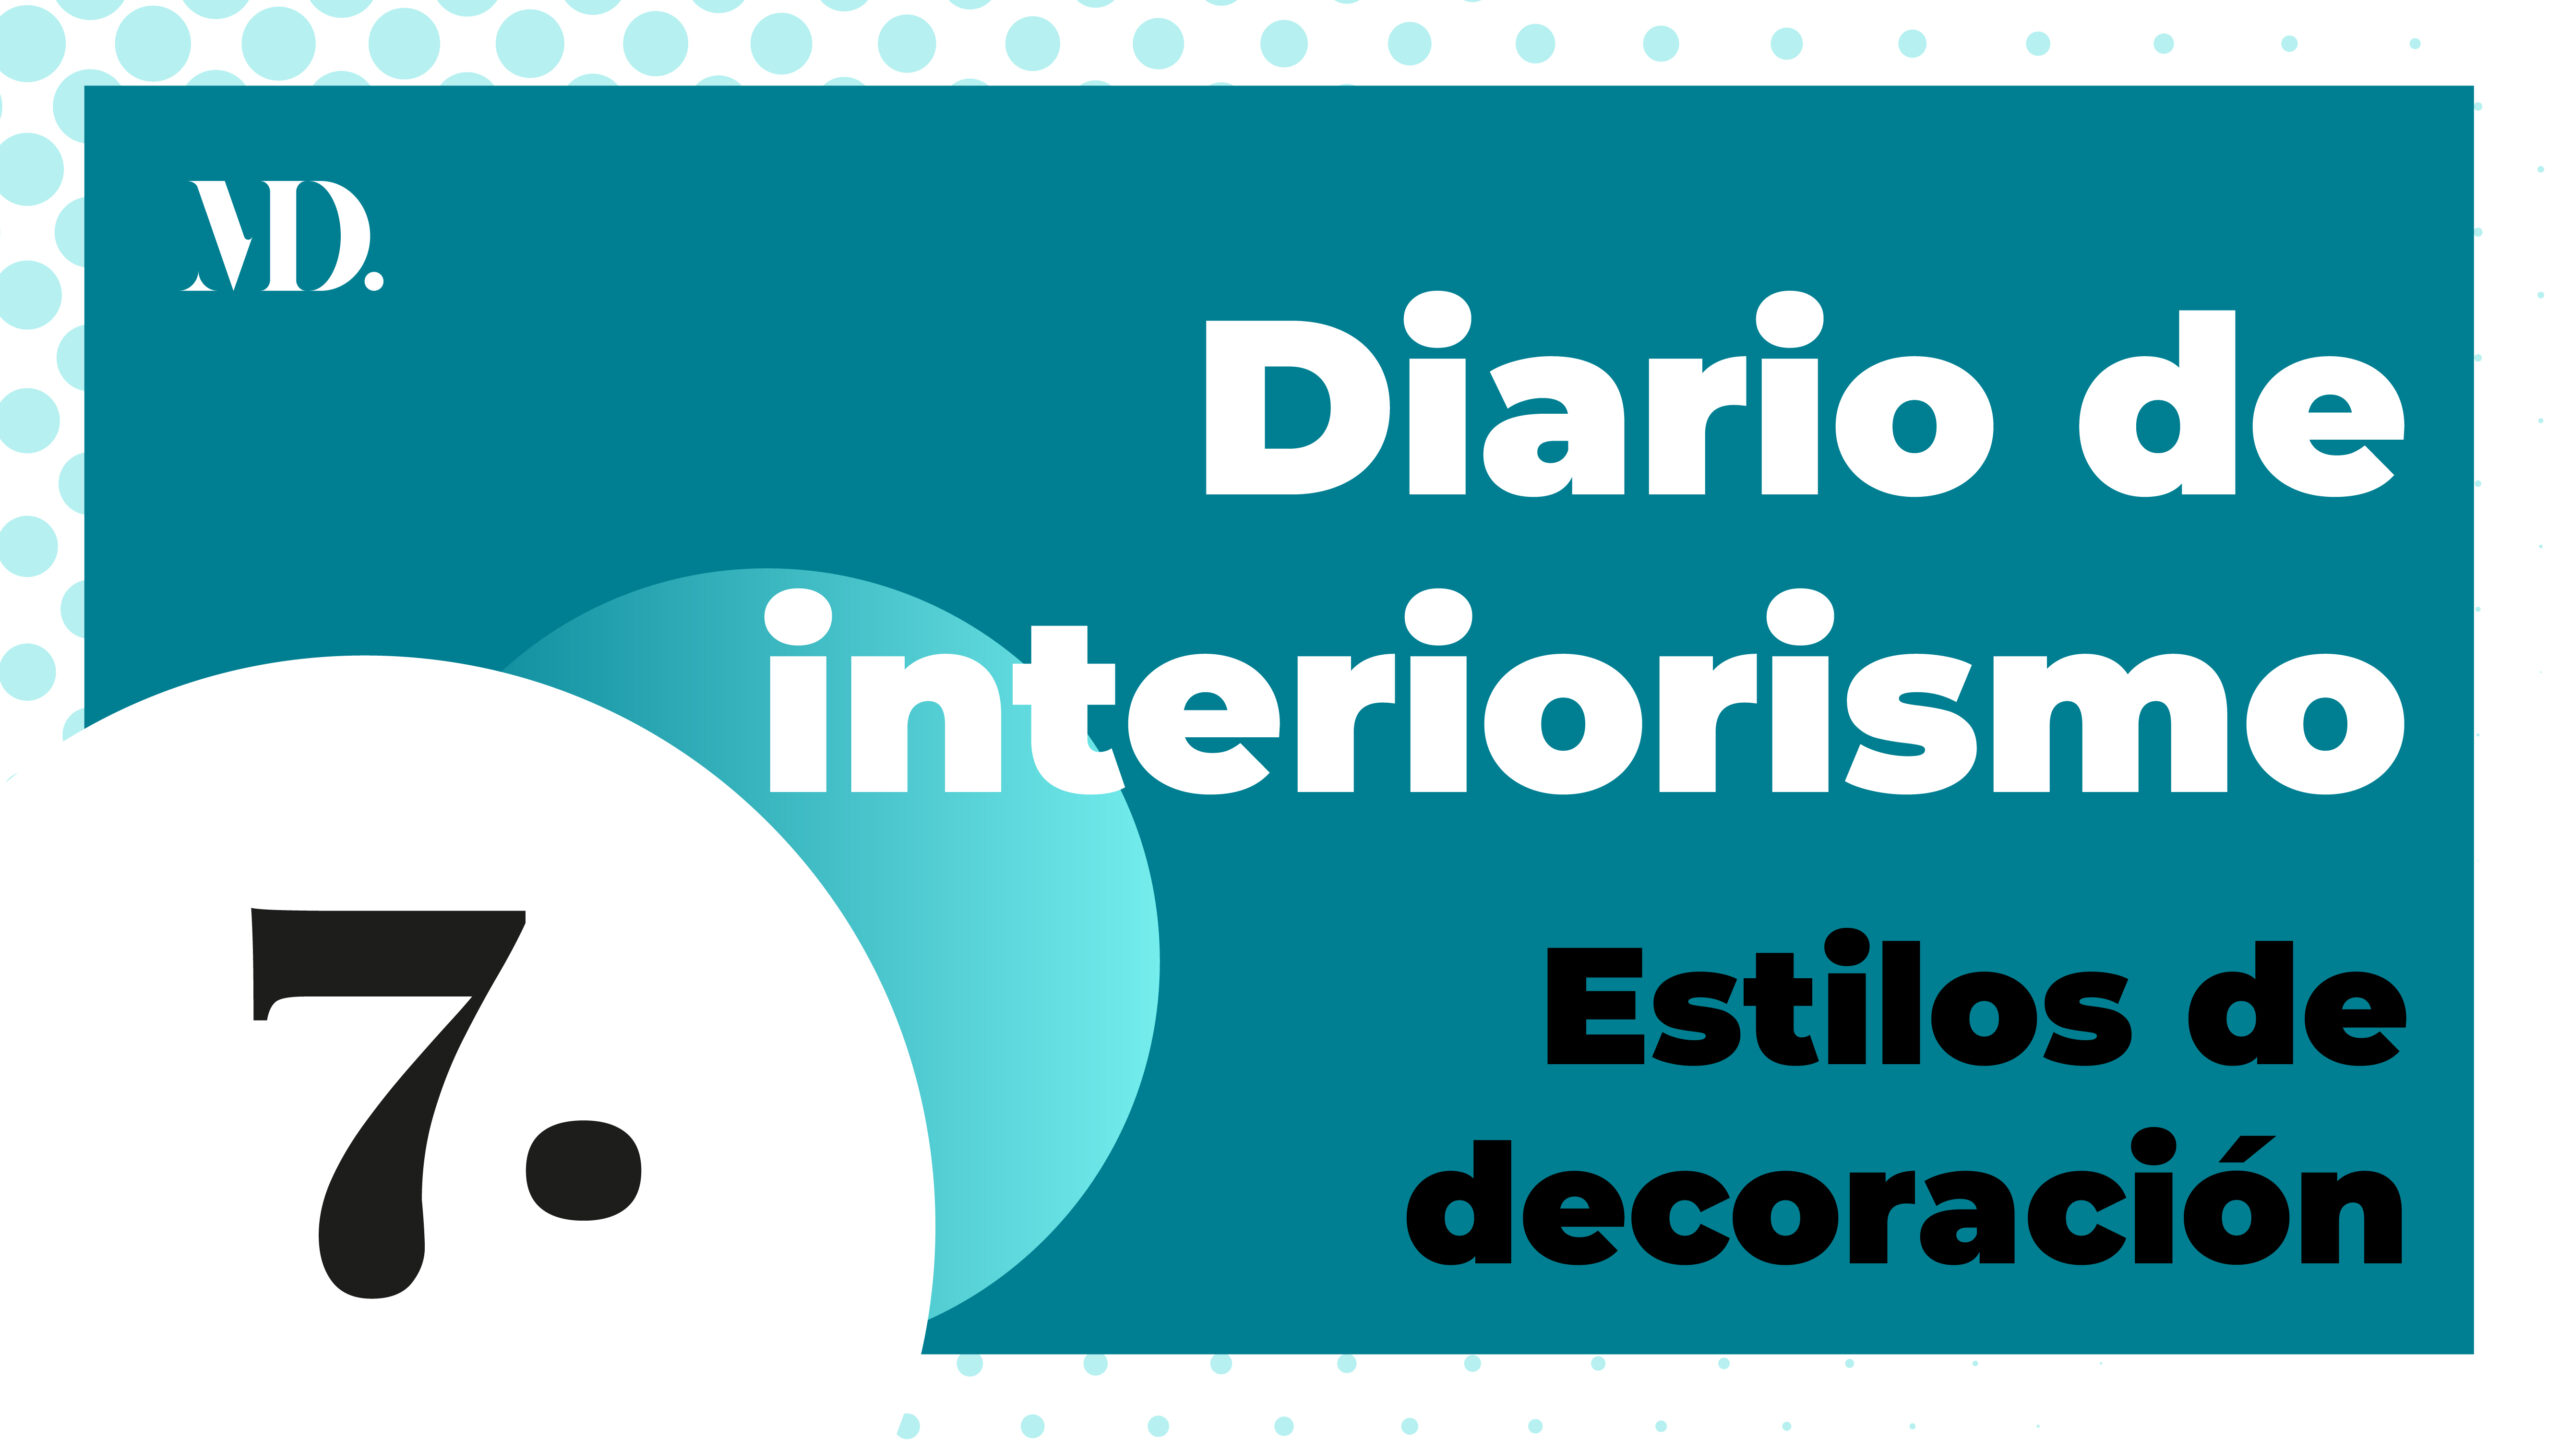 Cabecera y enlace Diario de interiorismo, programa Estilos de decoración